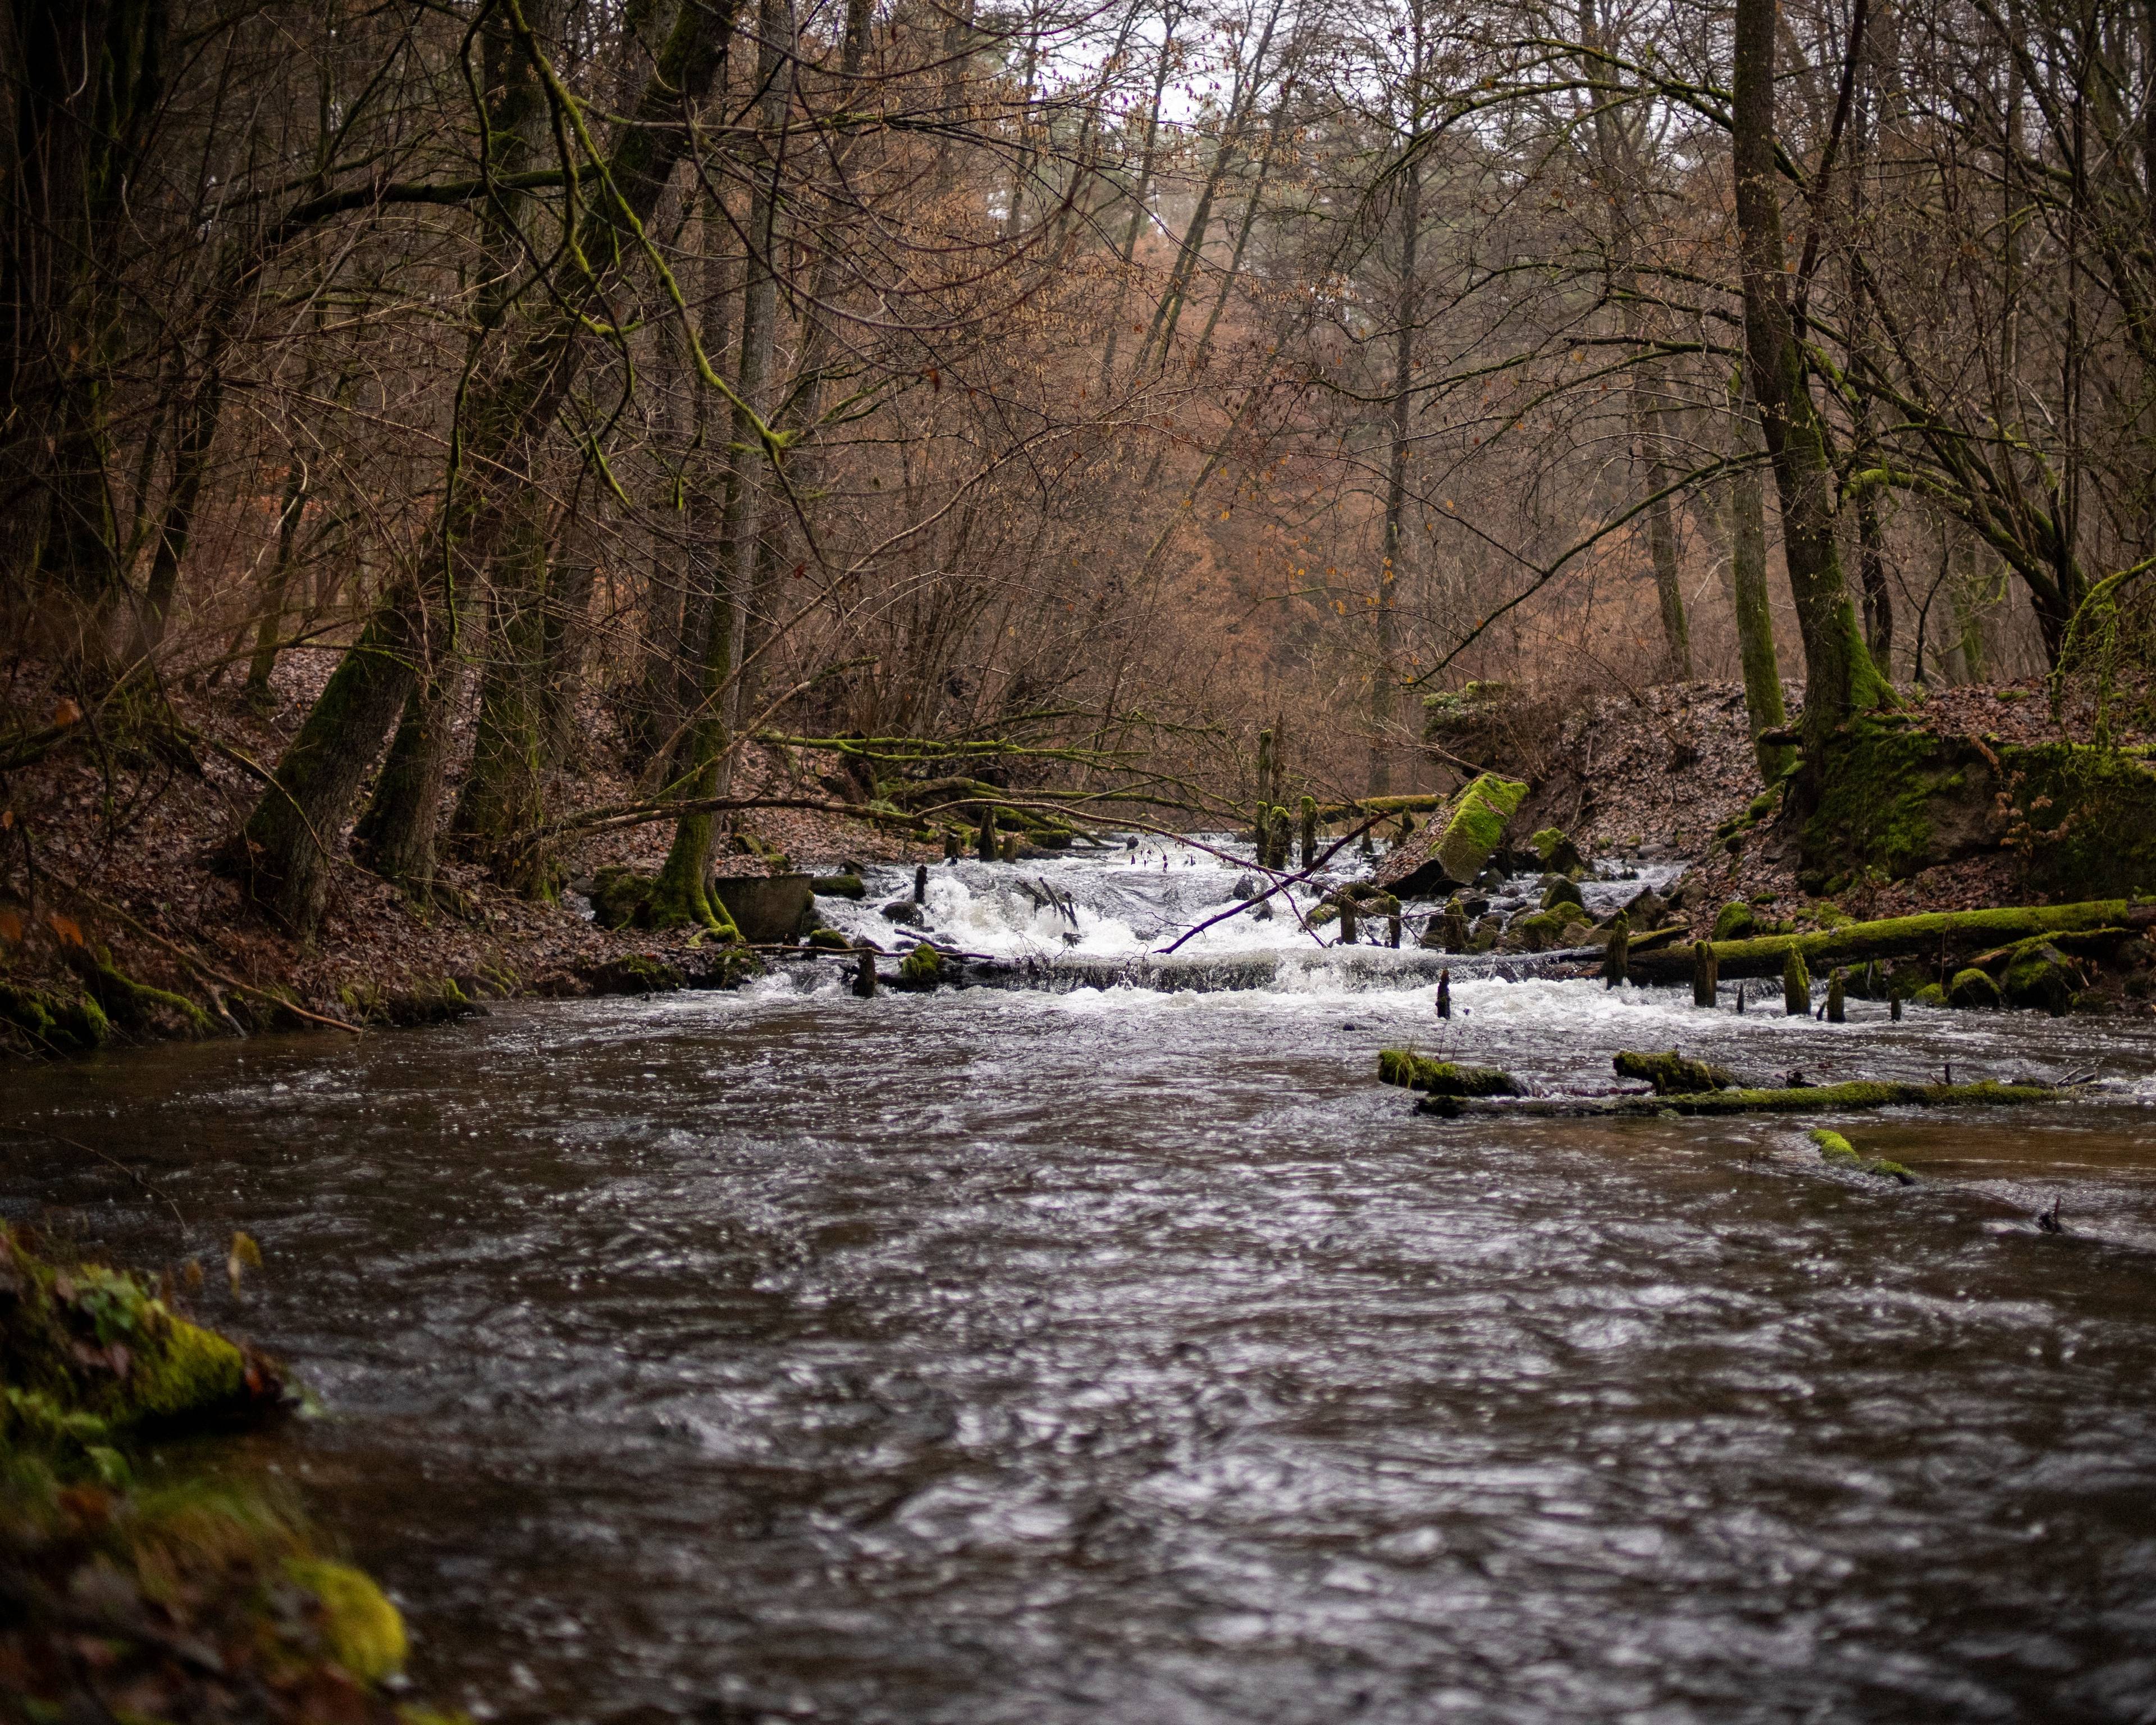 Rzeka płynąca przez las, w głębi widać pozostałości jakiejś budowli rzecznej